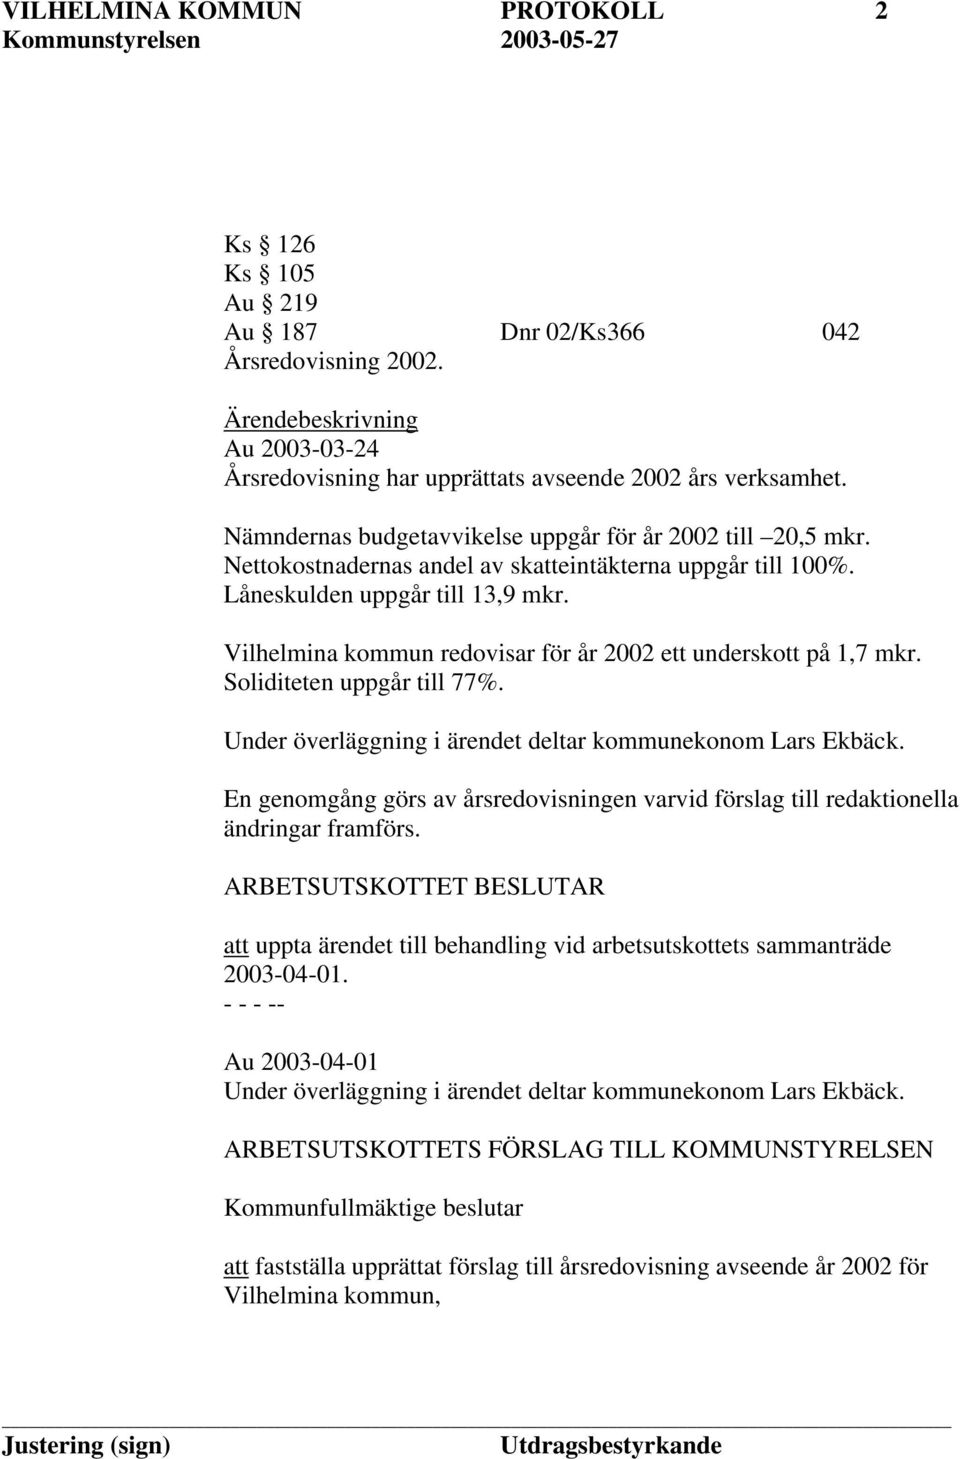 Vilhelmina kommun redovisar för år 2002 ett underskott på 1,7 mkr. Soliditeten uppgår till 77%. Under överläggning i ärendet deltar kommunekonom Lars Ekbäck.